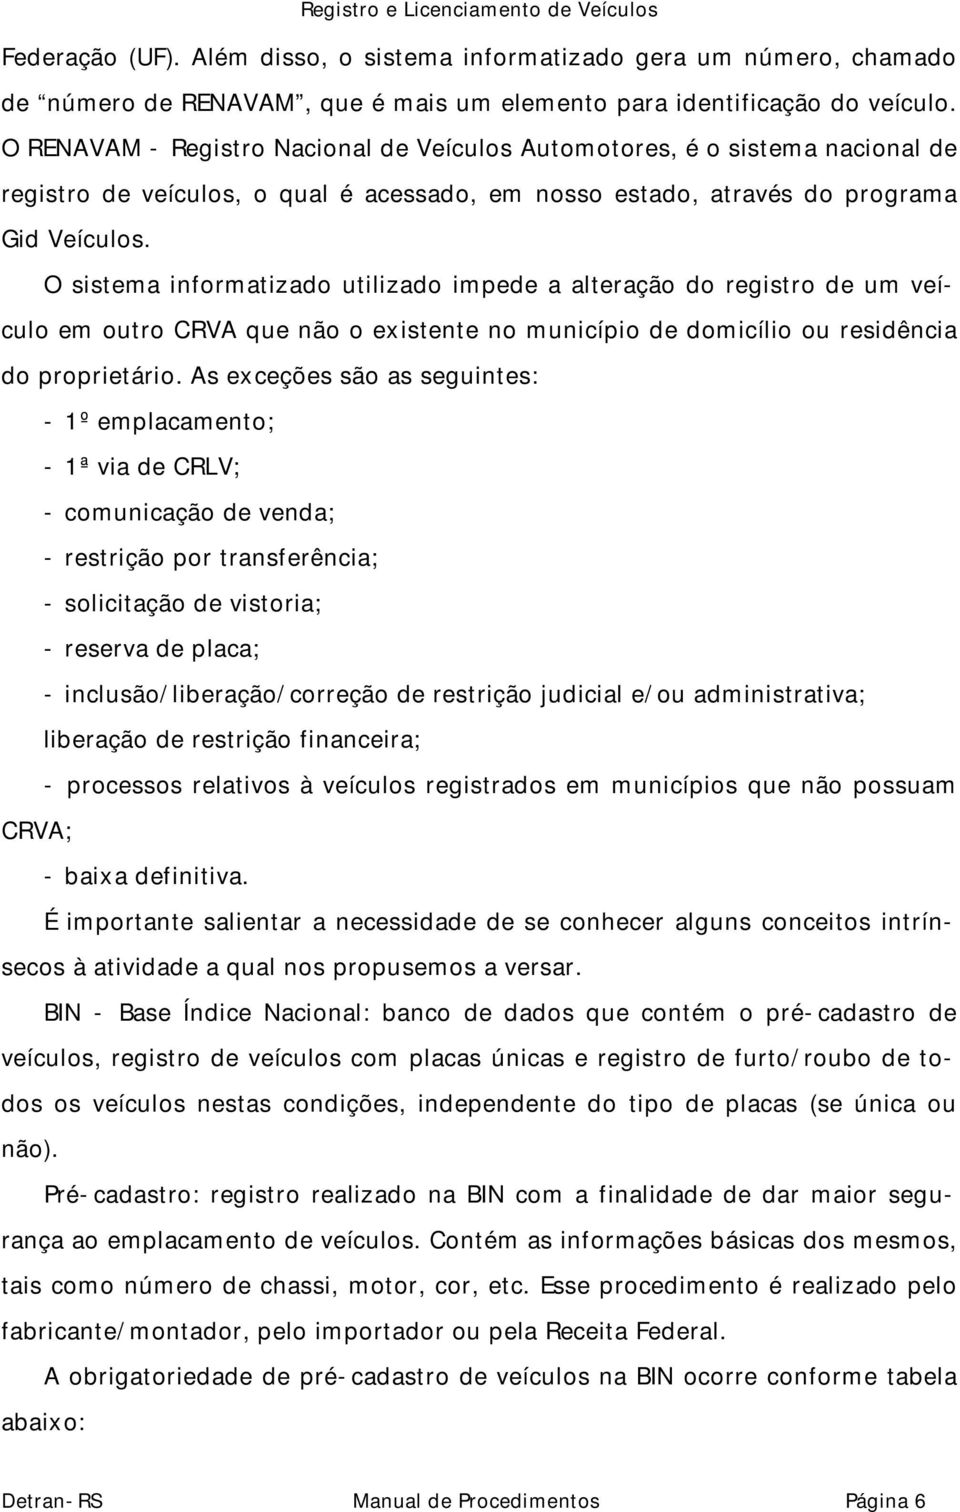 O sistema informatizado utilizado impede a alteração do registro de um veículo em outro CRVA que não o existente no município de domicílio ou residência do proprietário.